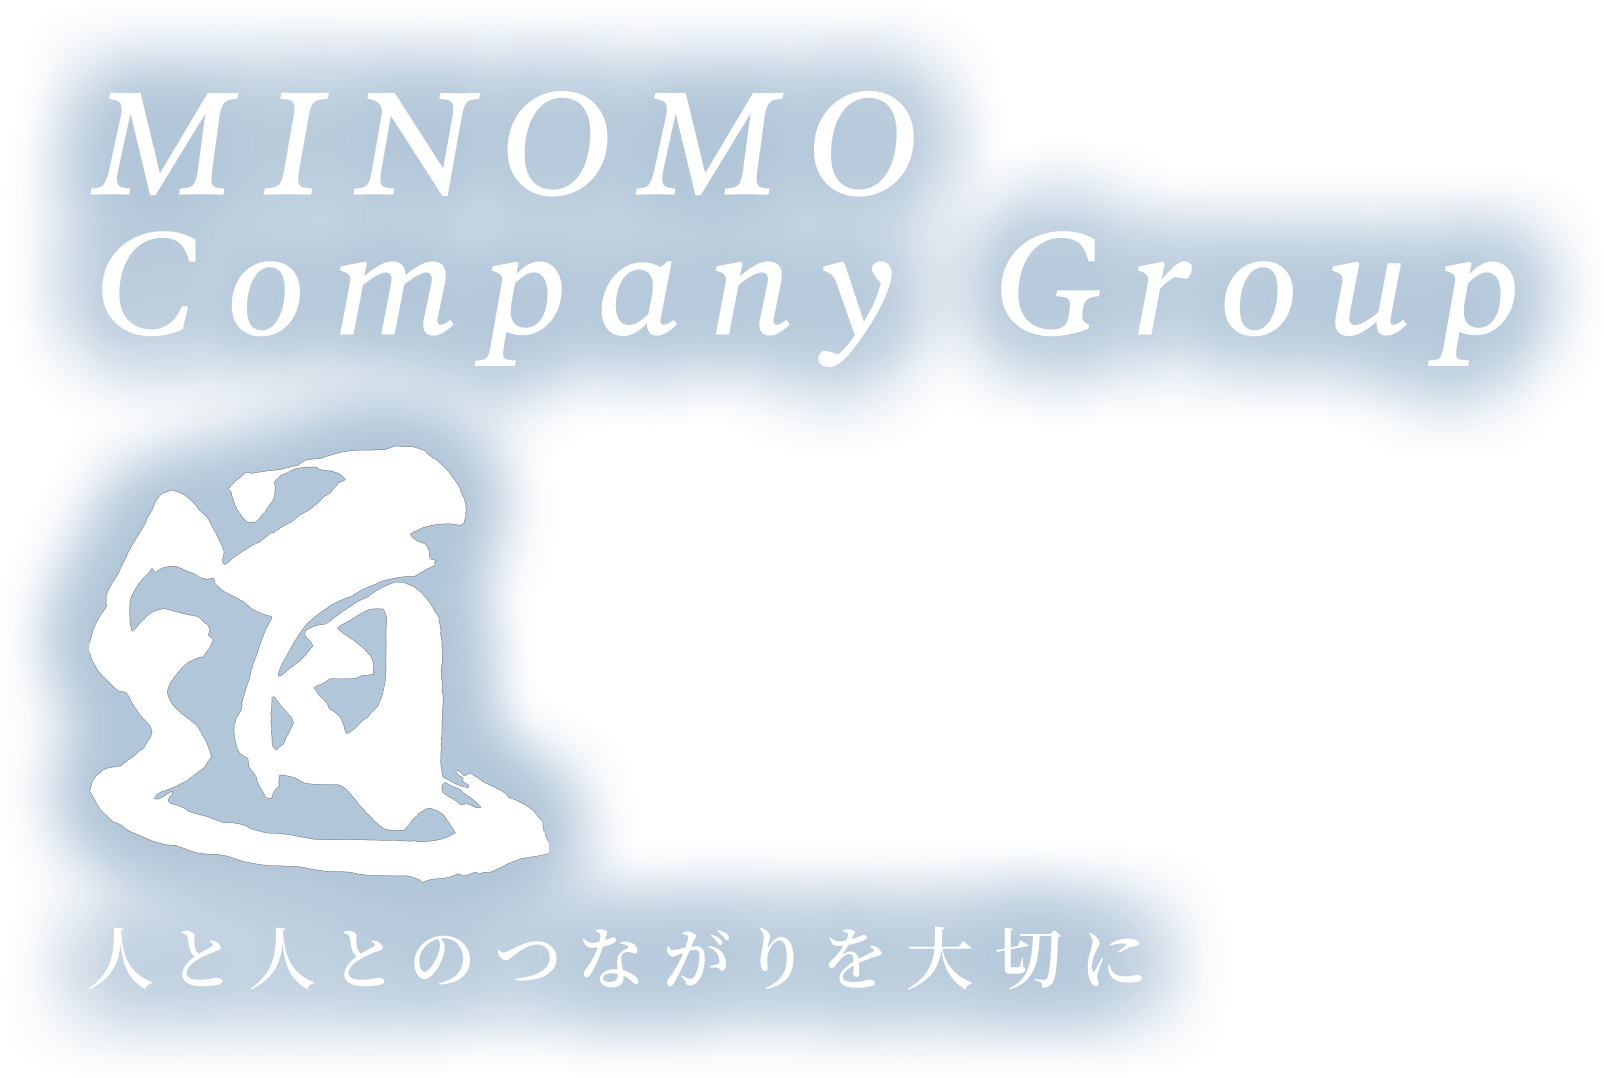 MINOMO Company Group 道 人と人とのつながりを大切に